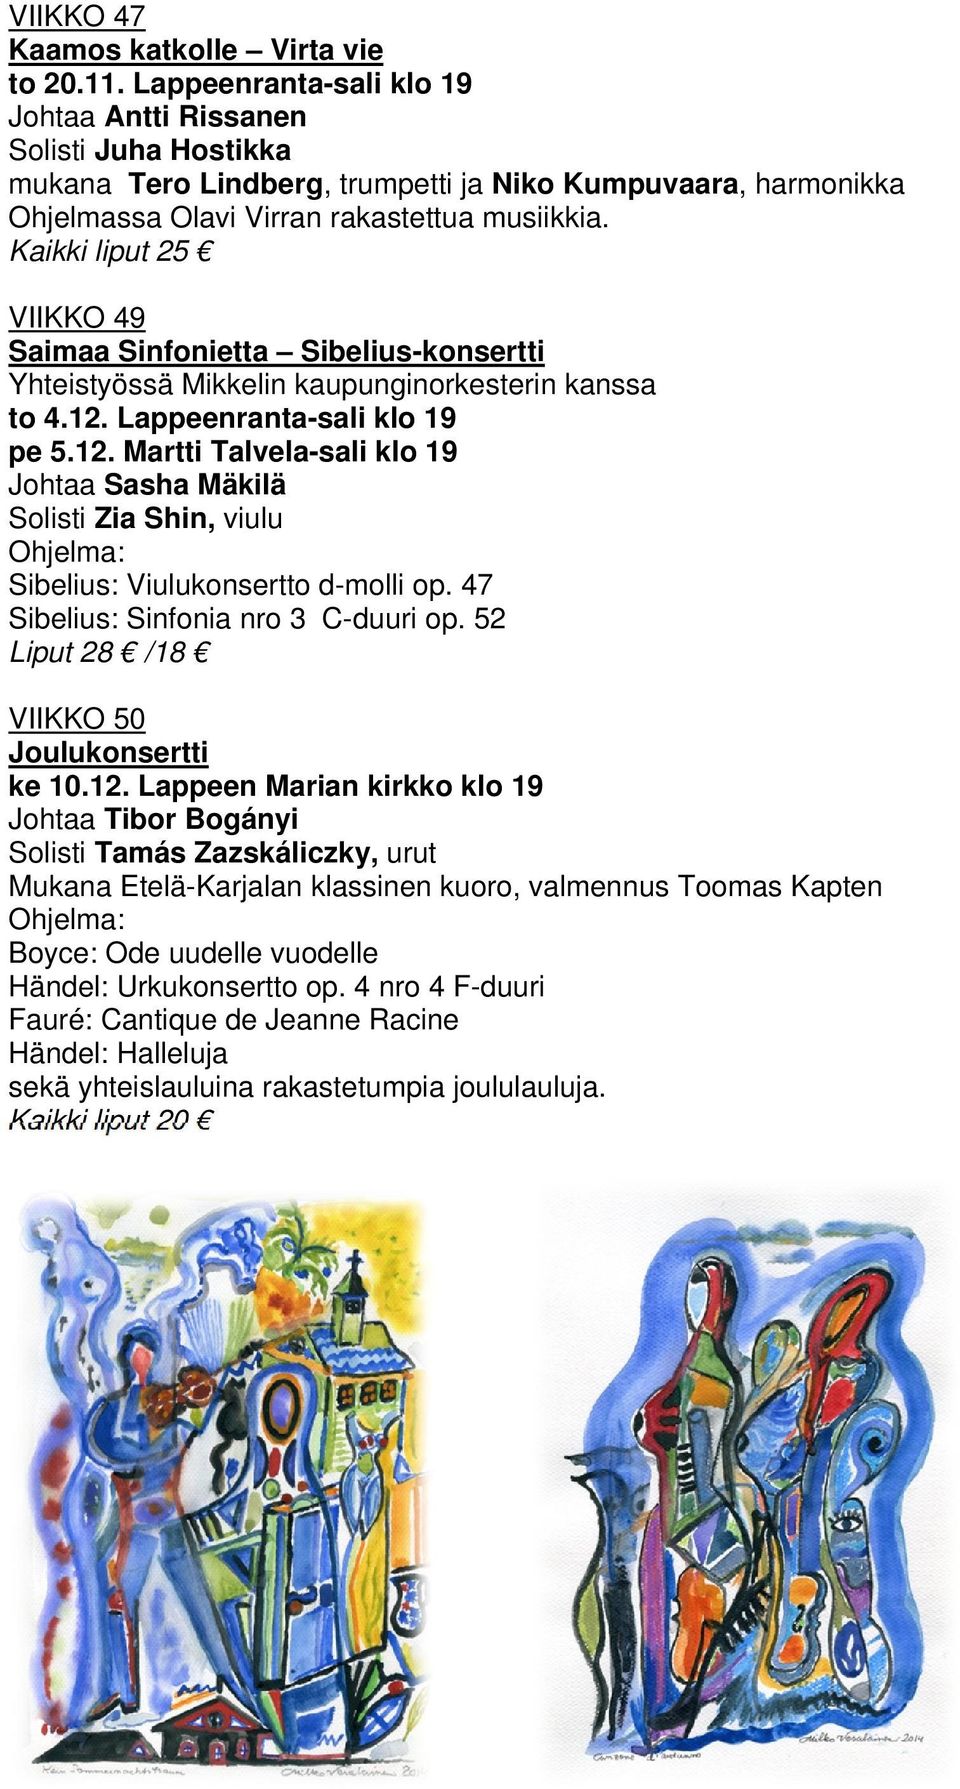 Kaikki liput 25 VIIKKO 49 Saimaa Sinfonietta Sibelius-konsertti Yhteistyössä Mikkelin kaupunginorkesterin kanssa to 4.12.